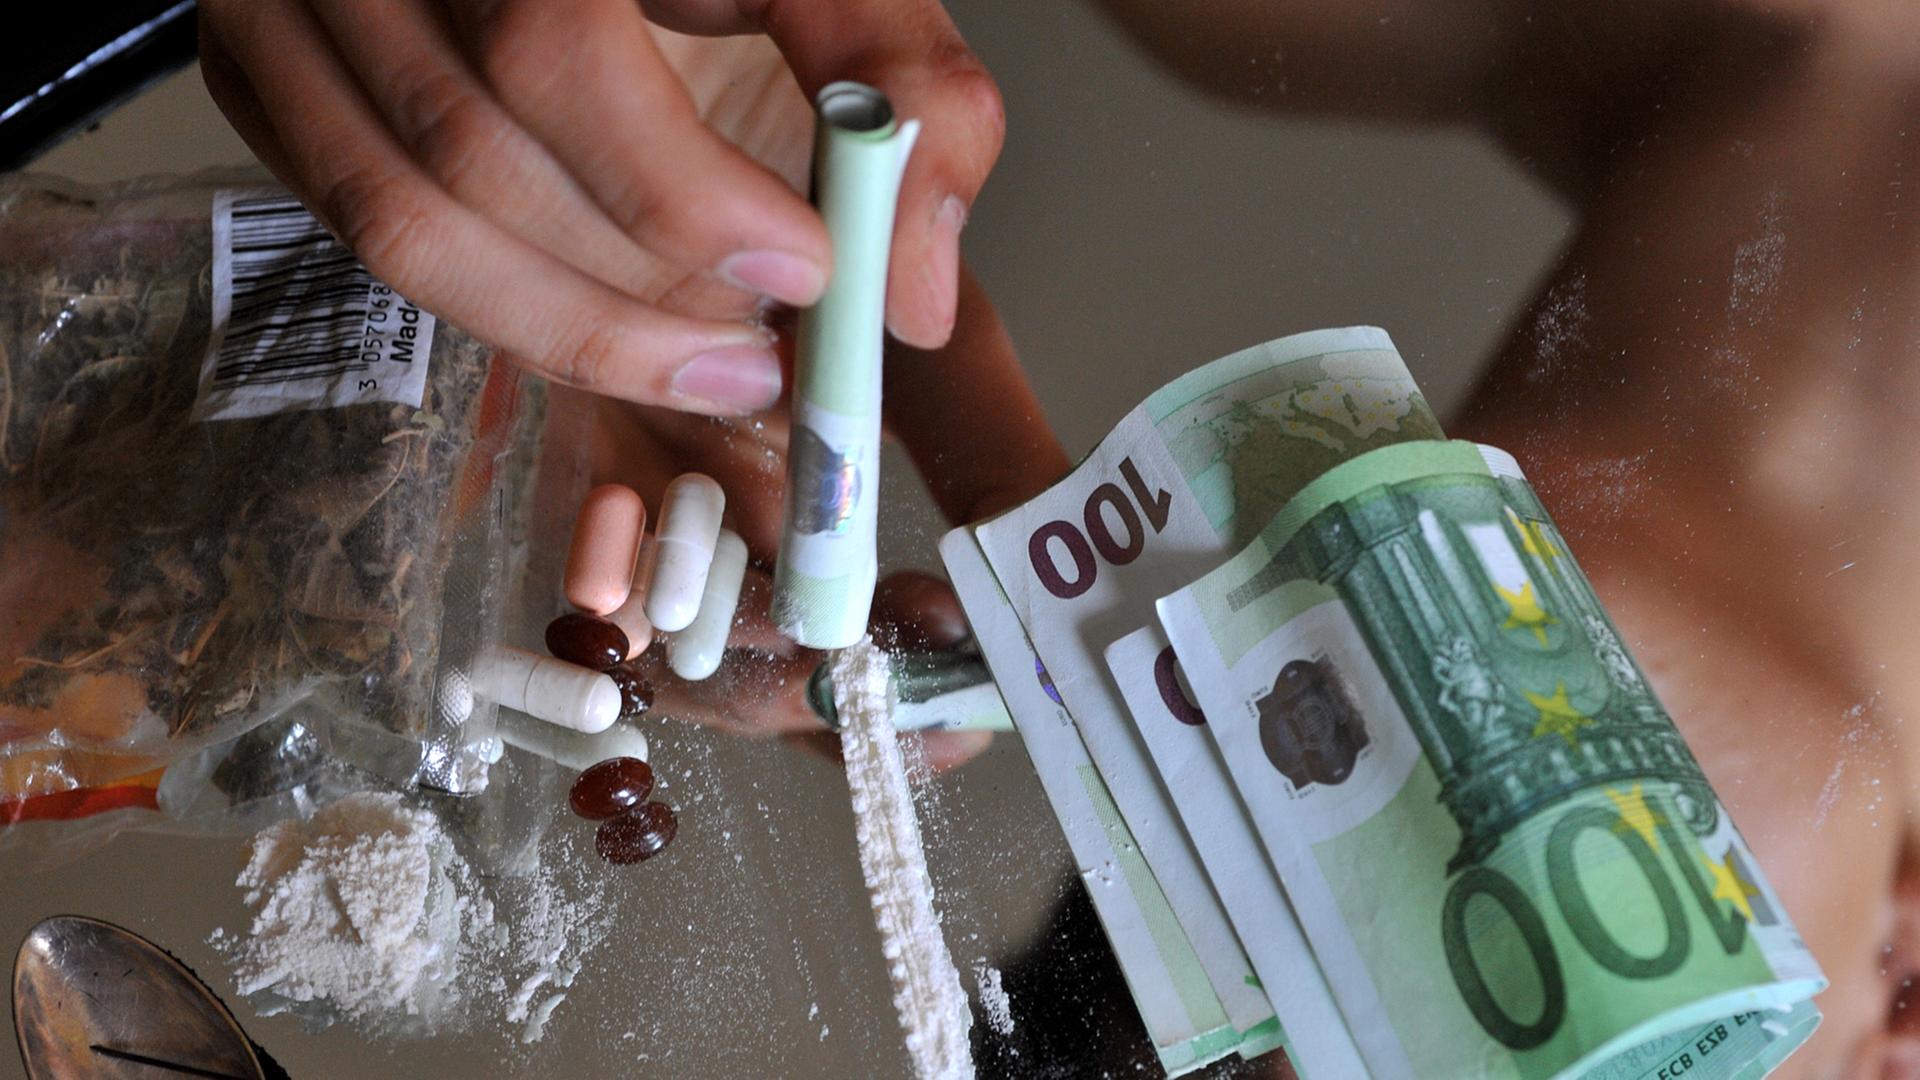 Geld und Zubehör zum Drogenkonsum